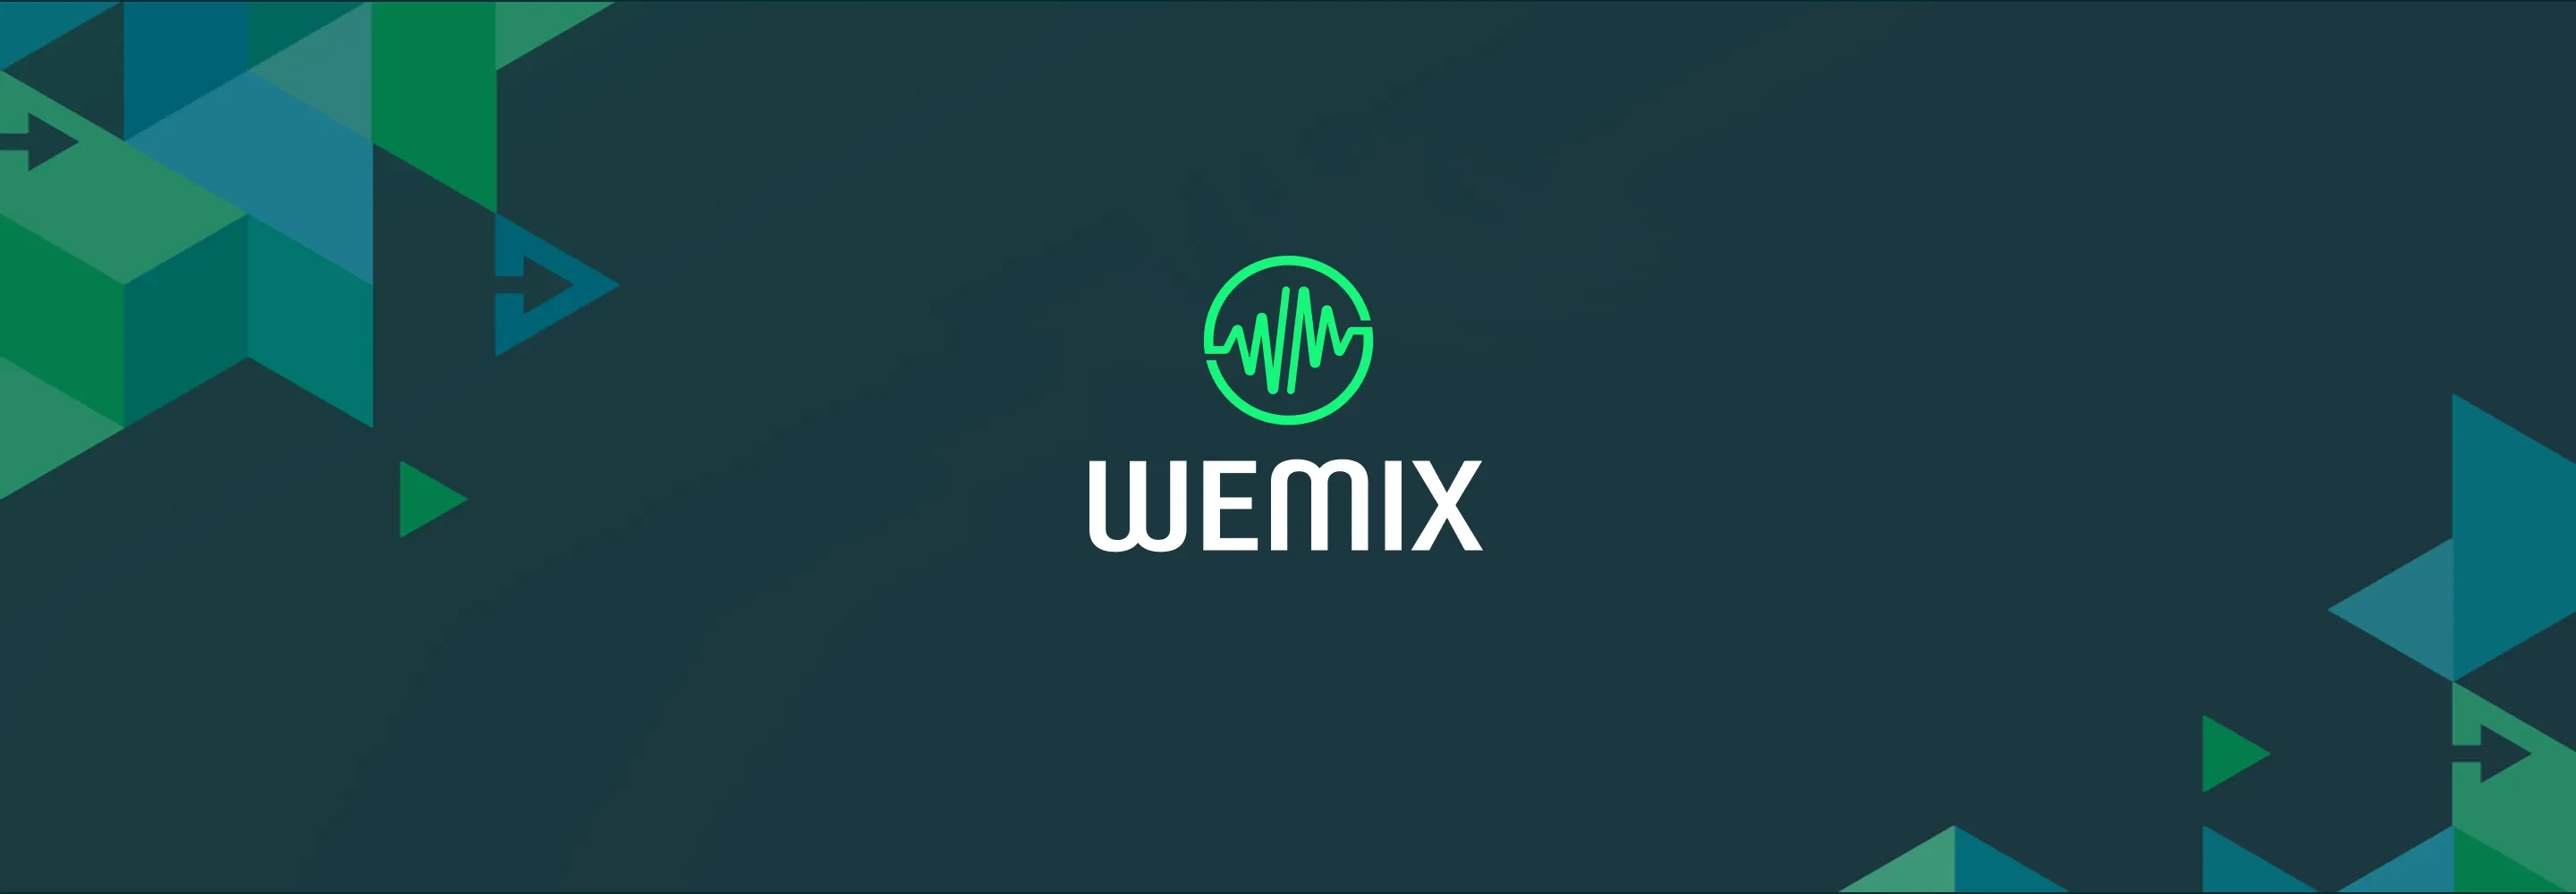 Wemix Network